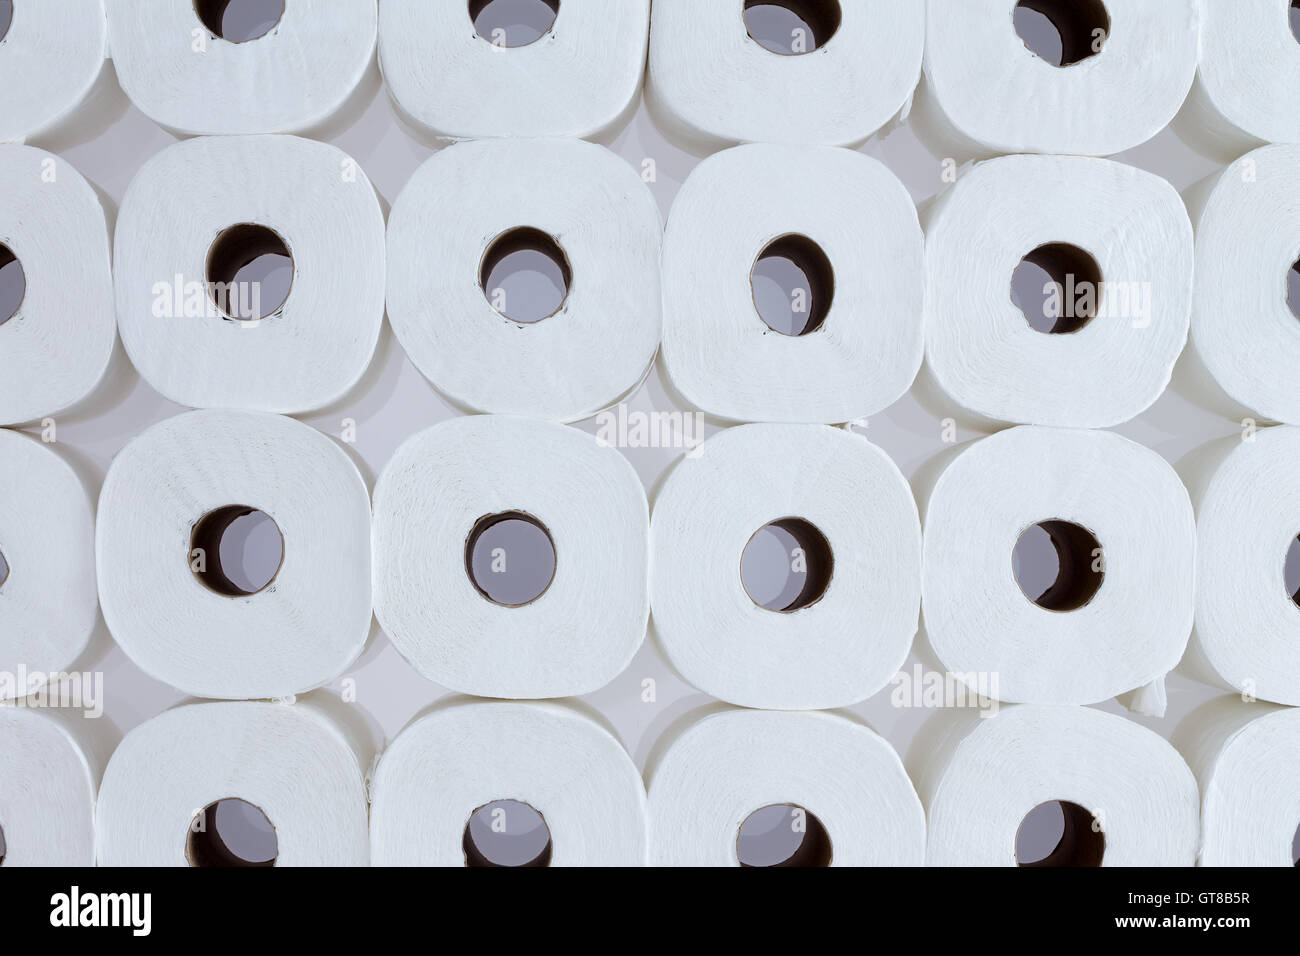 Full frame pattern di sfondo bianco di rotoli di carta igienica disposti in file ordinate visto dal di sopra - la carta igienica per tutti Foto Stock